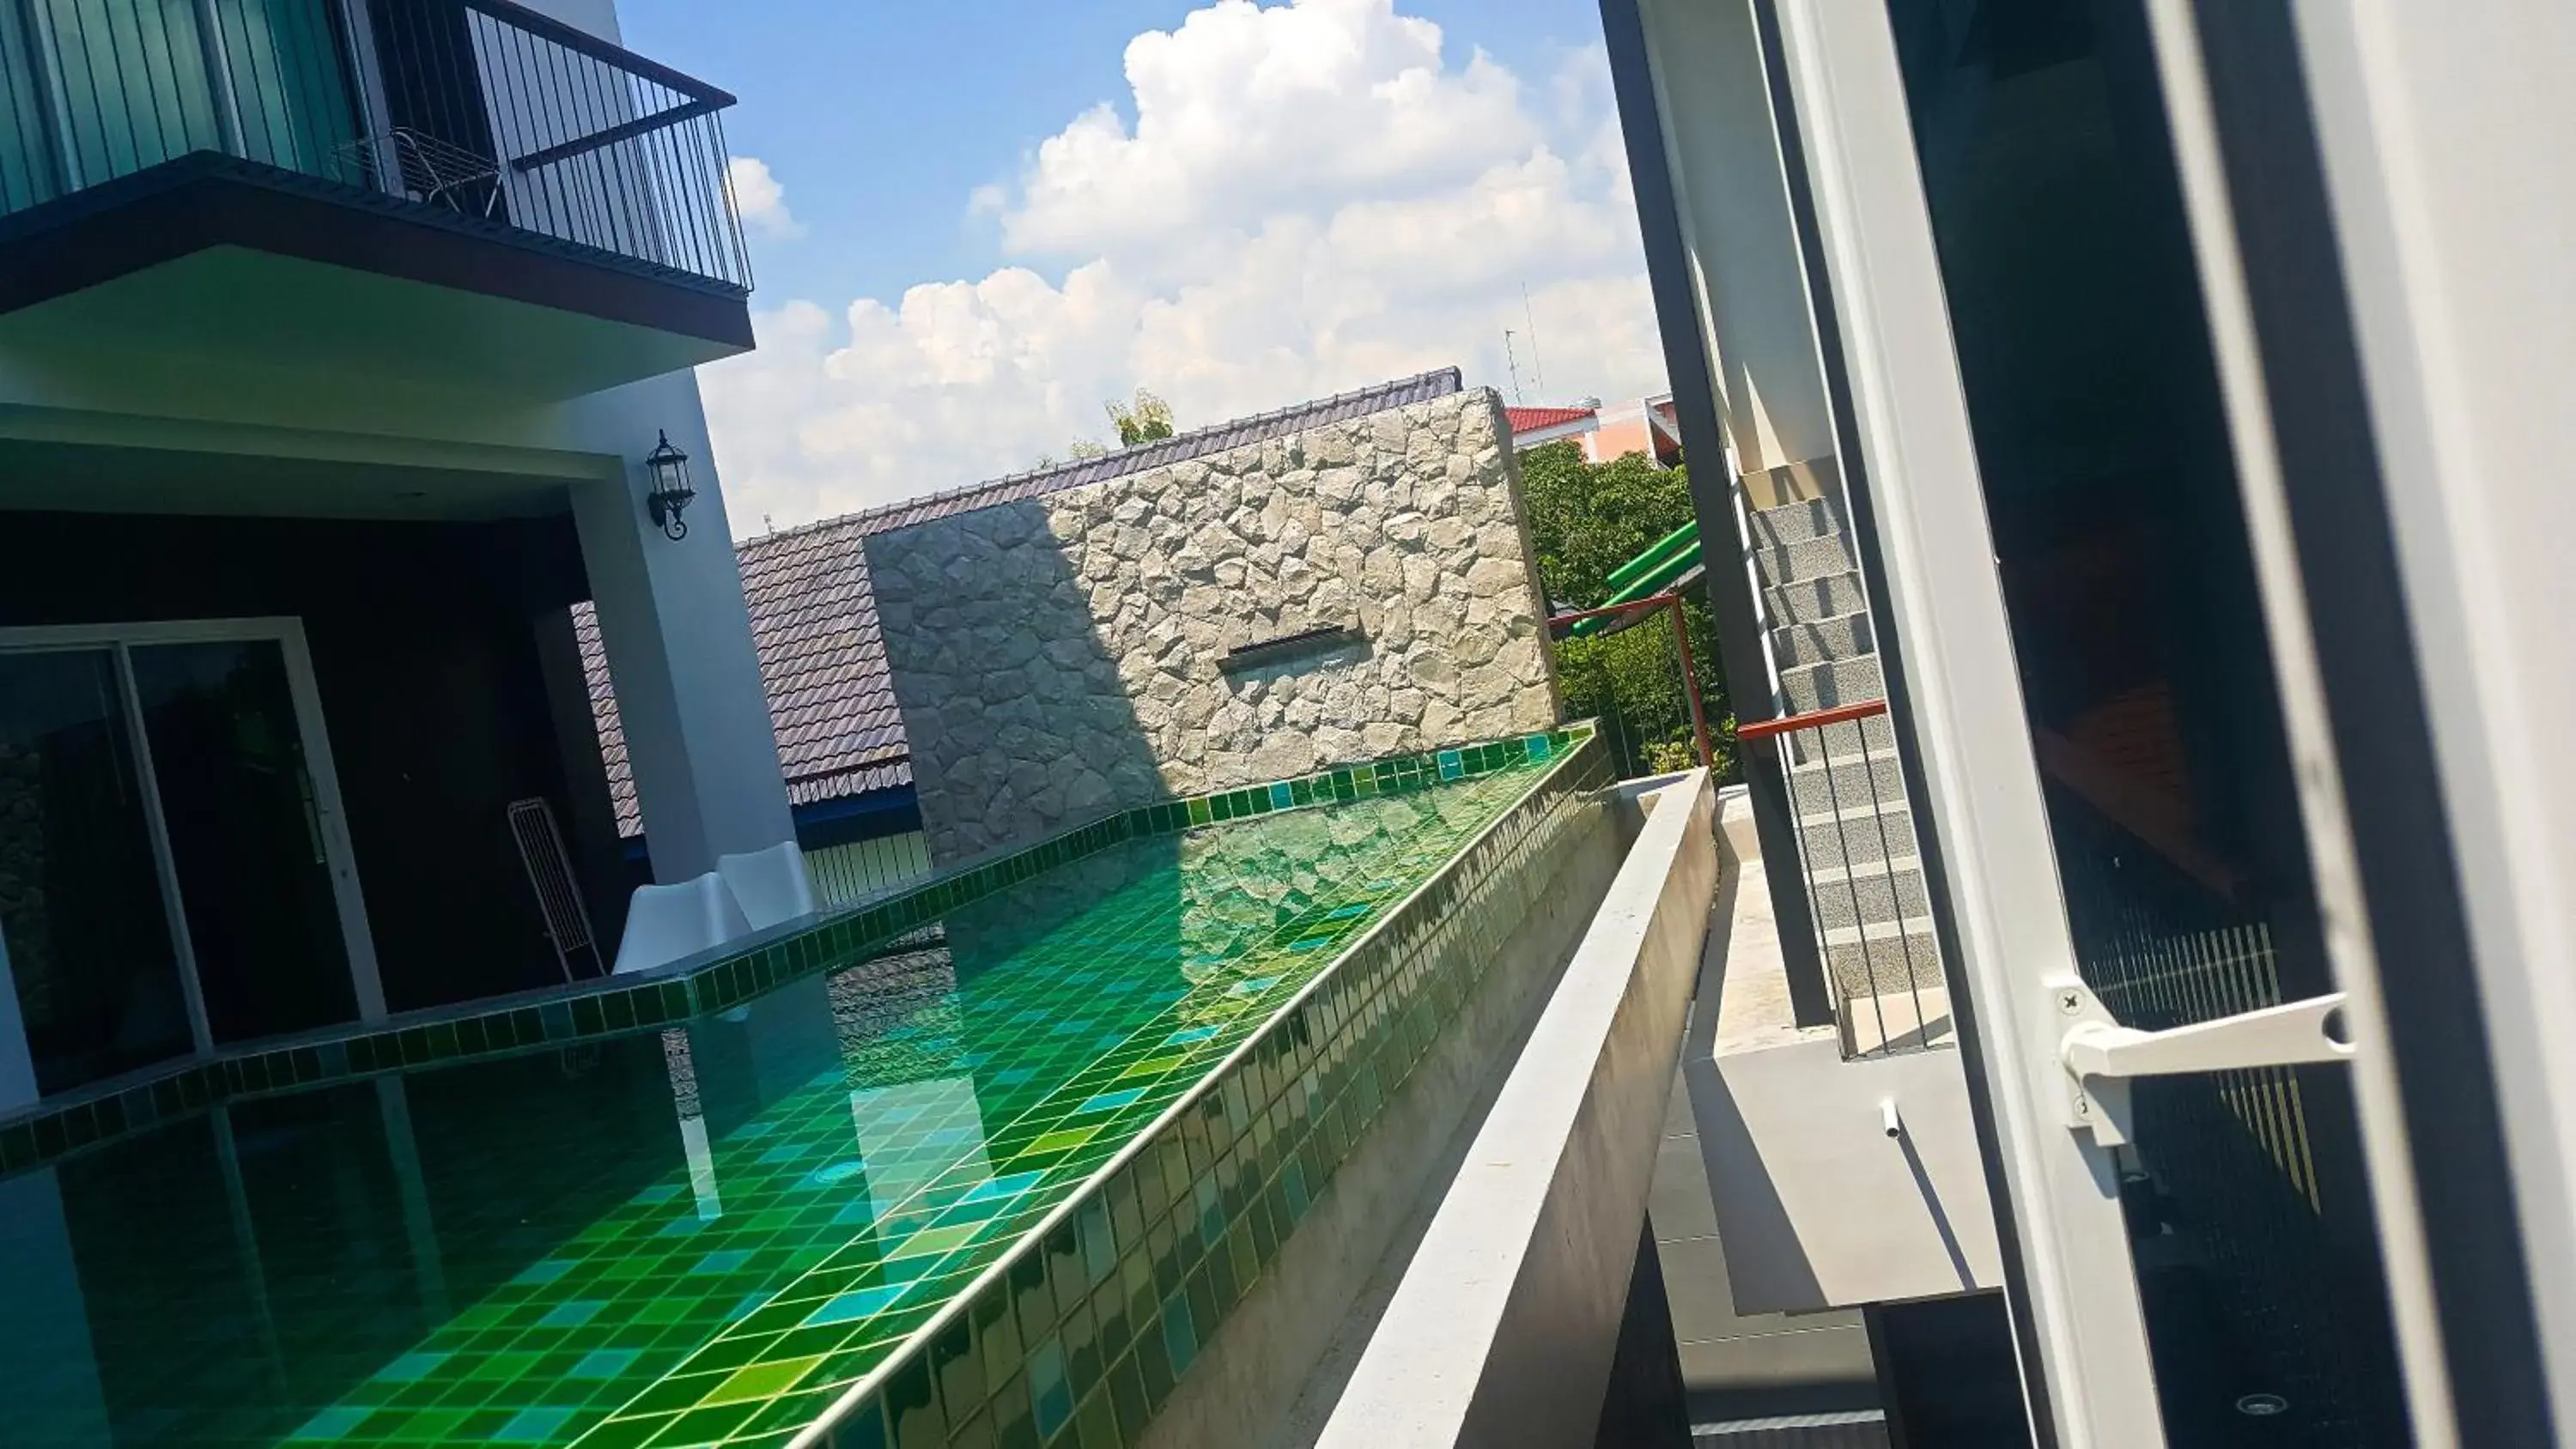 Pool View in Ricco Suvarnabhumi